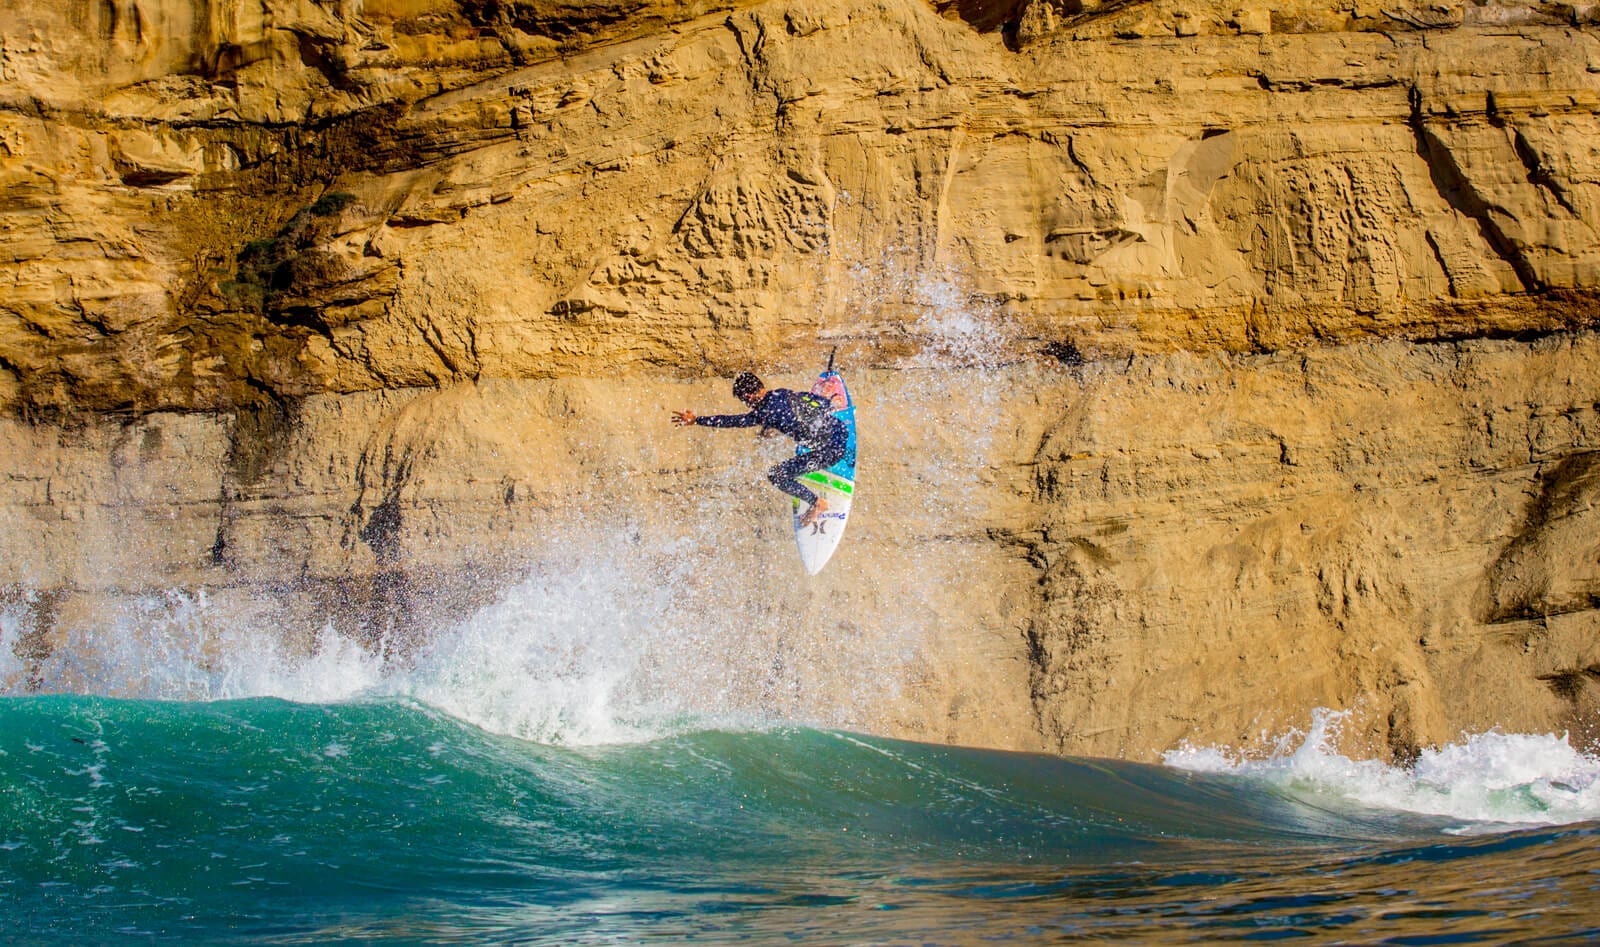 Filipe Toledo massive air - surf technique